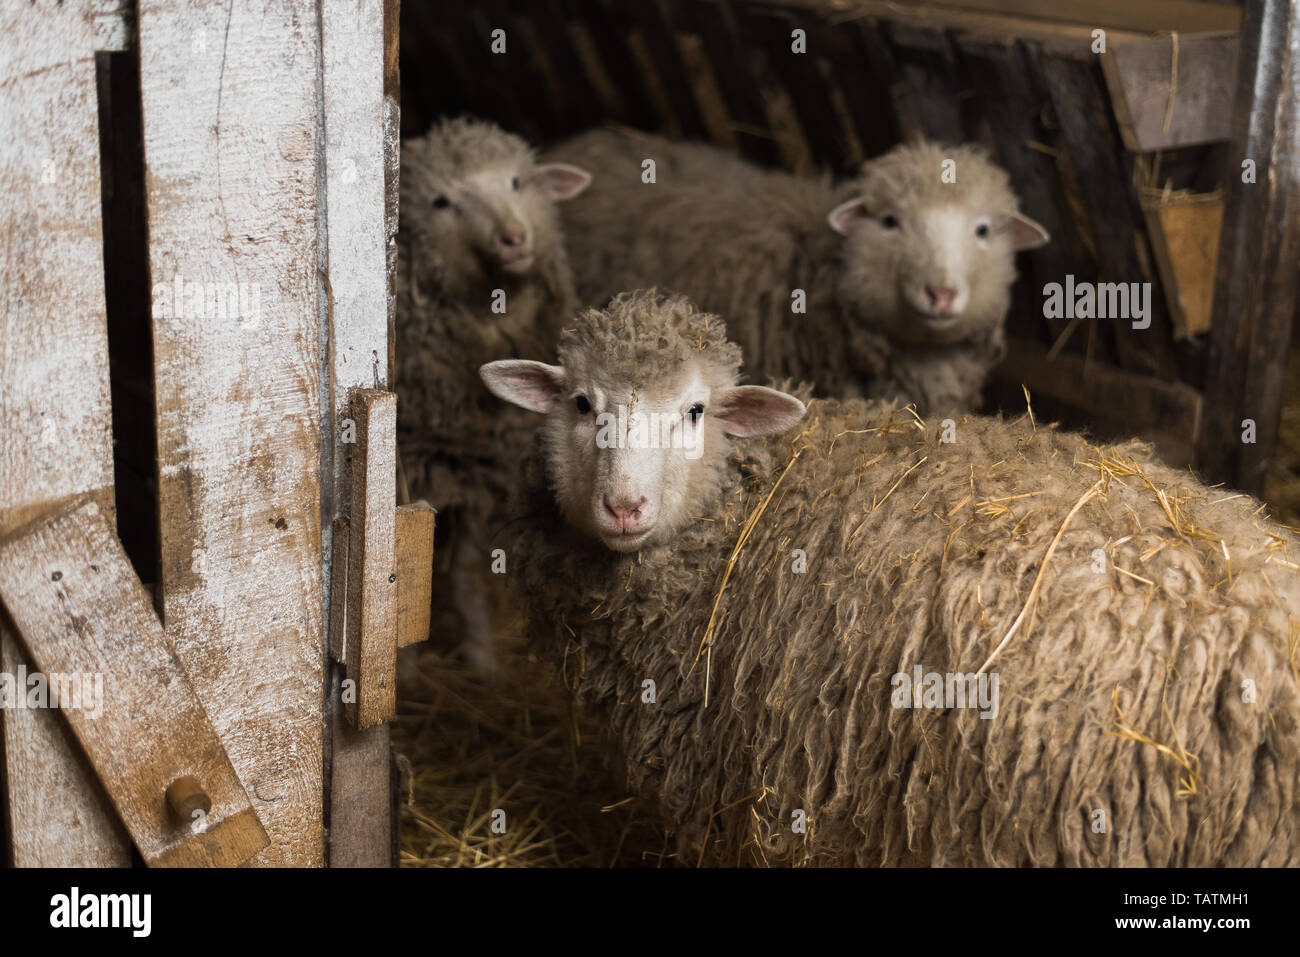 Schöne und niedliche Schafe innerhalb der Farm essen Heu. Ein Schaf mit  viel Wolle blickt in die Kamera Stockfotografie - Alamy